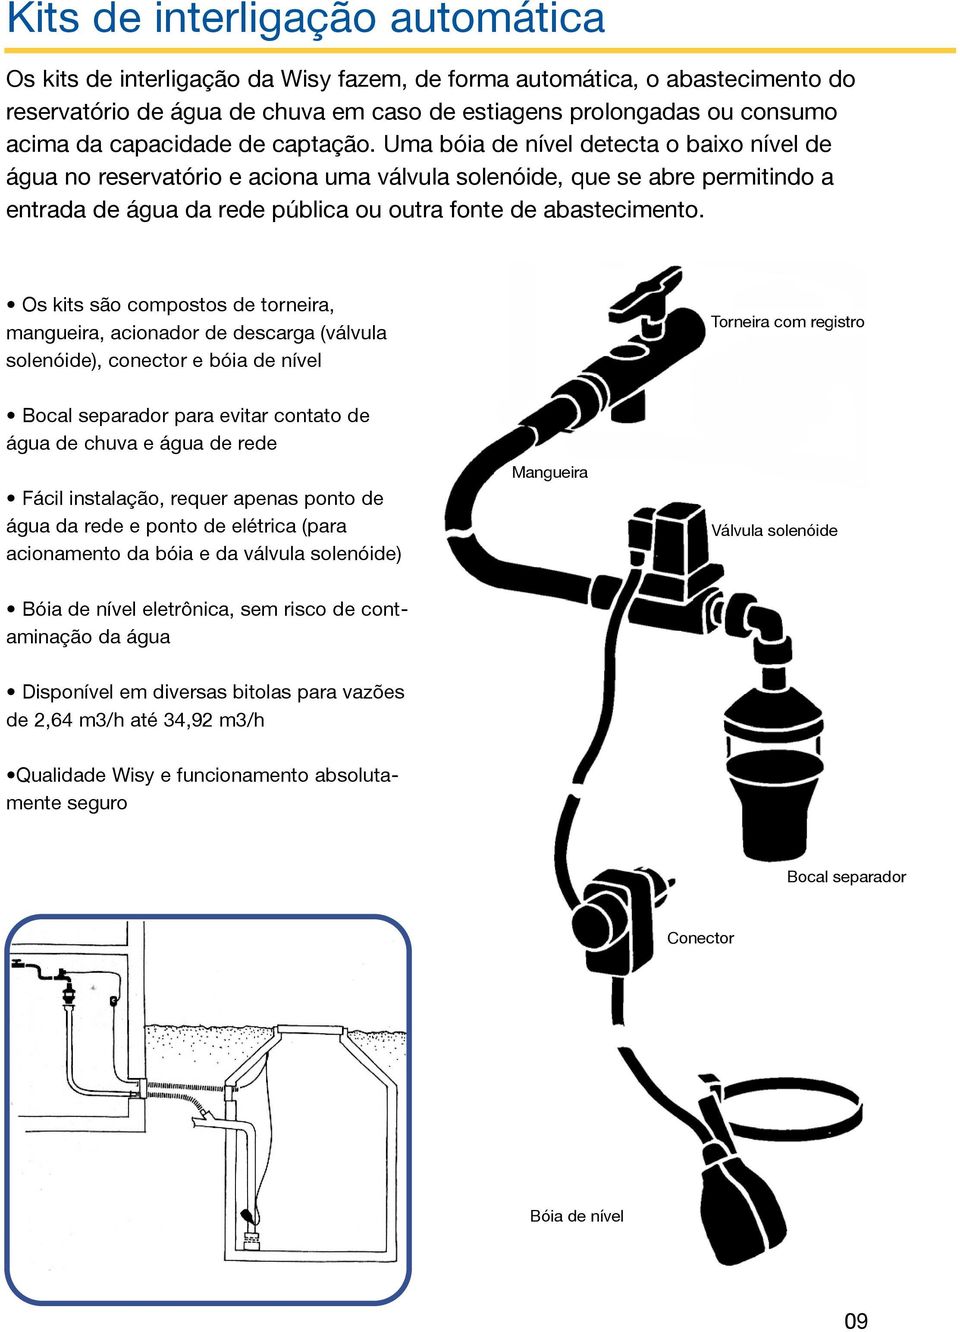 Uma bóia de nível detecta o baixo nível de água no reservatório e aciona uma válvula solenóide, que se abre permitindo a entrada de água da rede pública ou outra fonte de abastecimento.